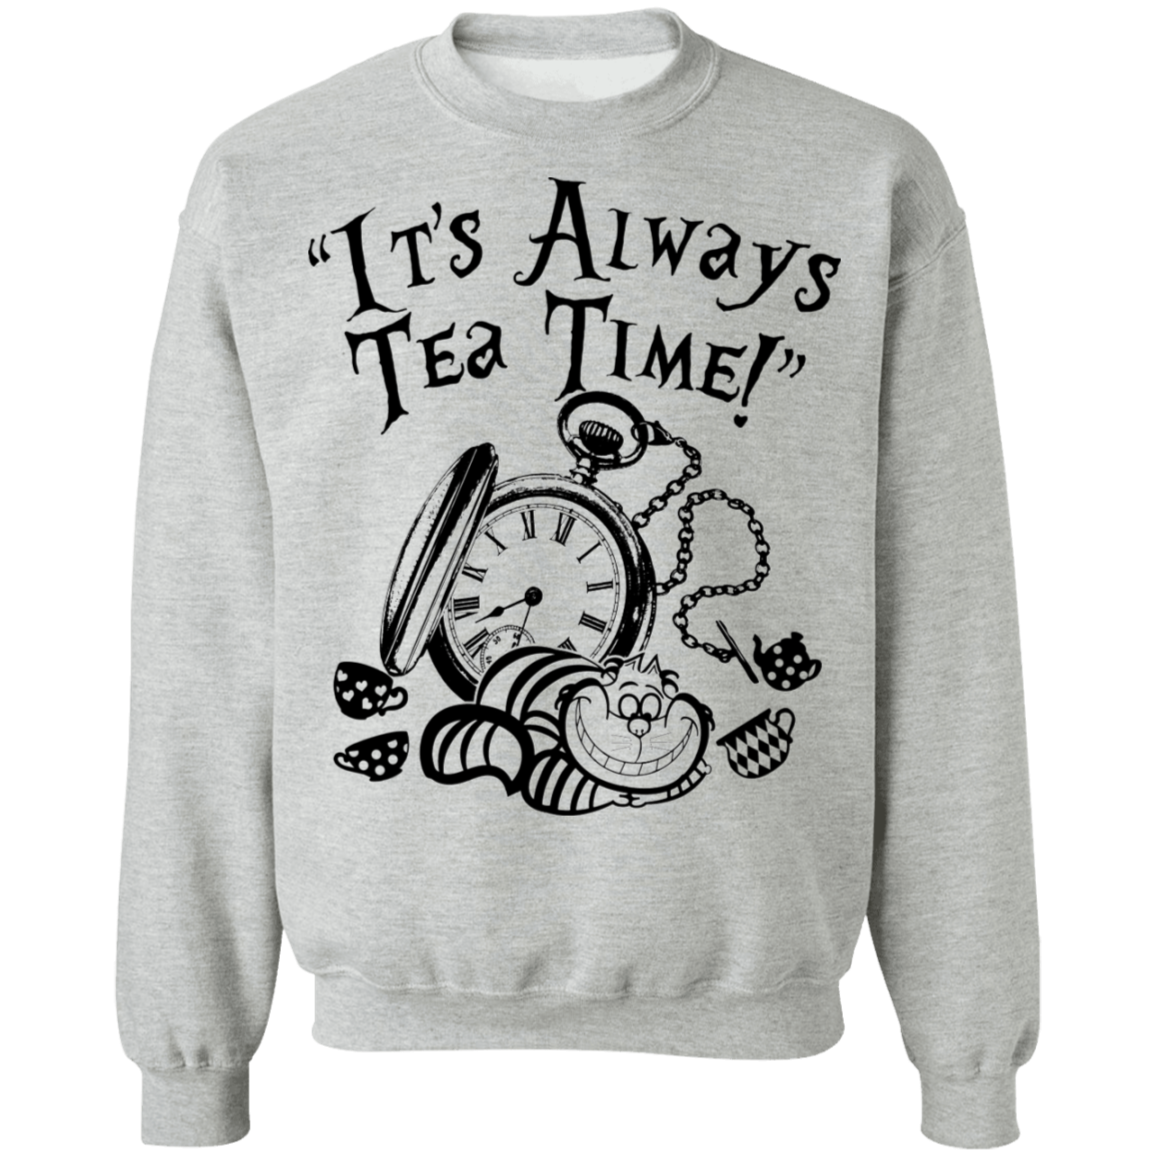 It's Always Tea Time Crewneck Pullover Sweatshirt